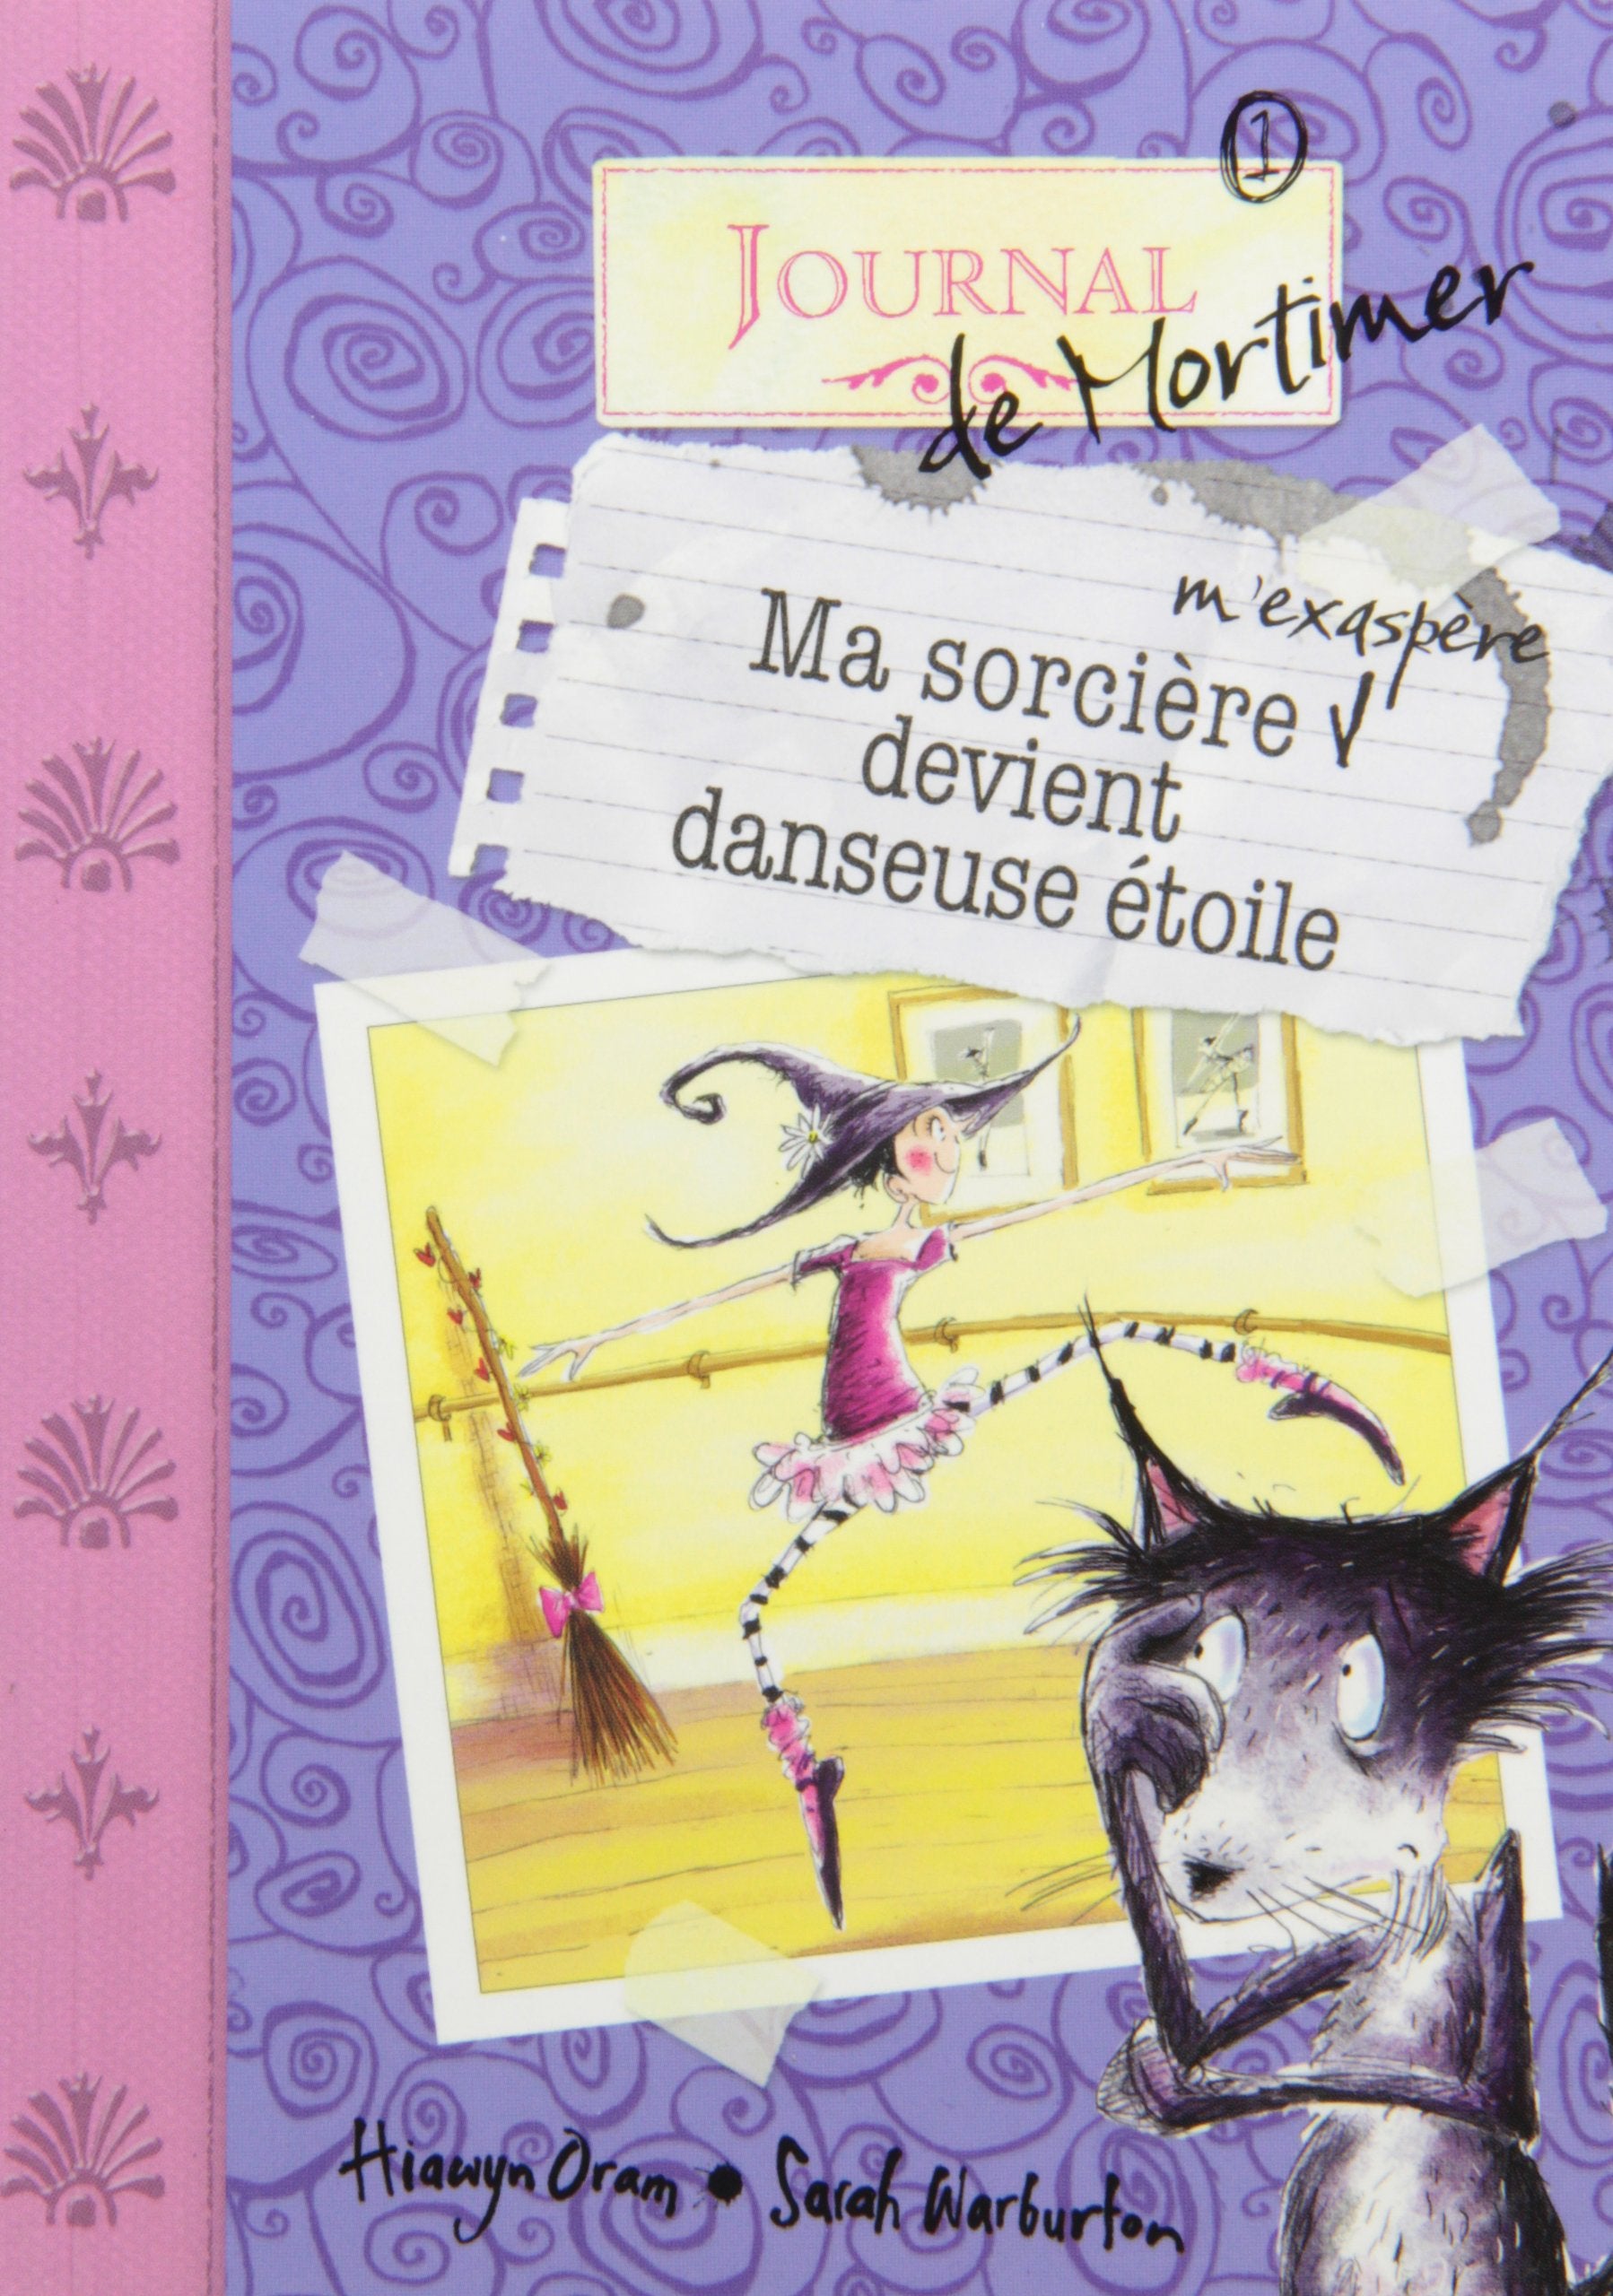 Livre ISBN 2896514066 Journal de Mortimer # 1 : Ma sorcière m'exaspère devient danseuse étoile